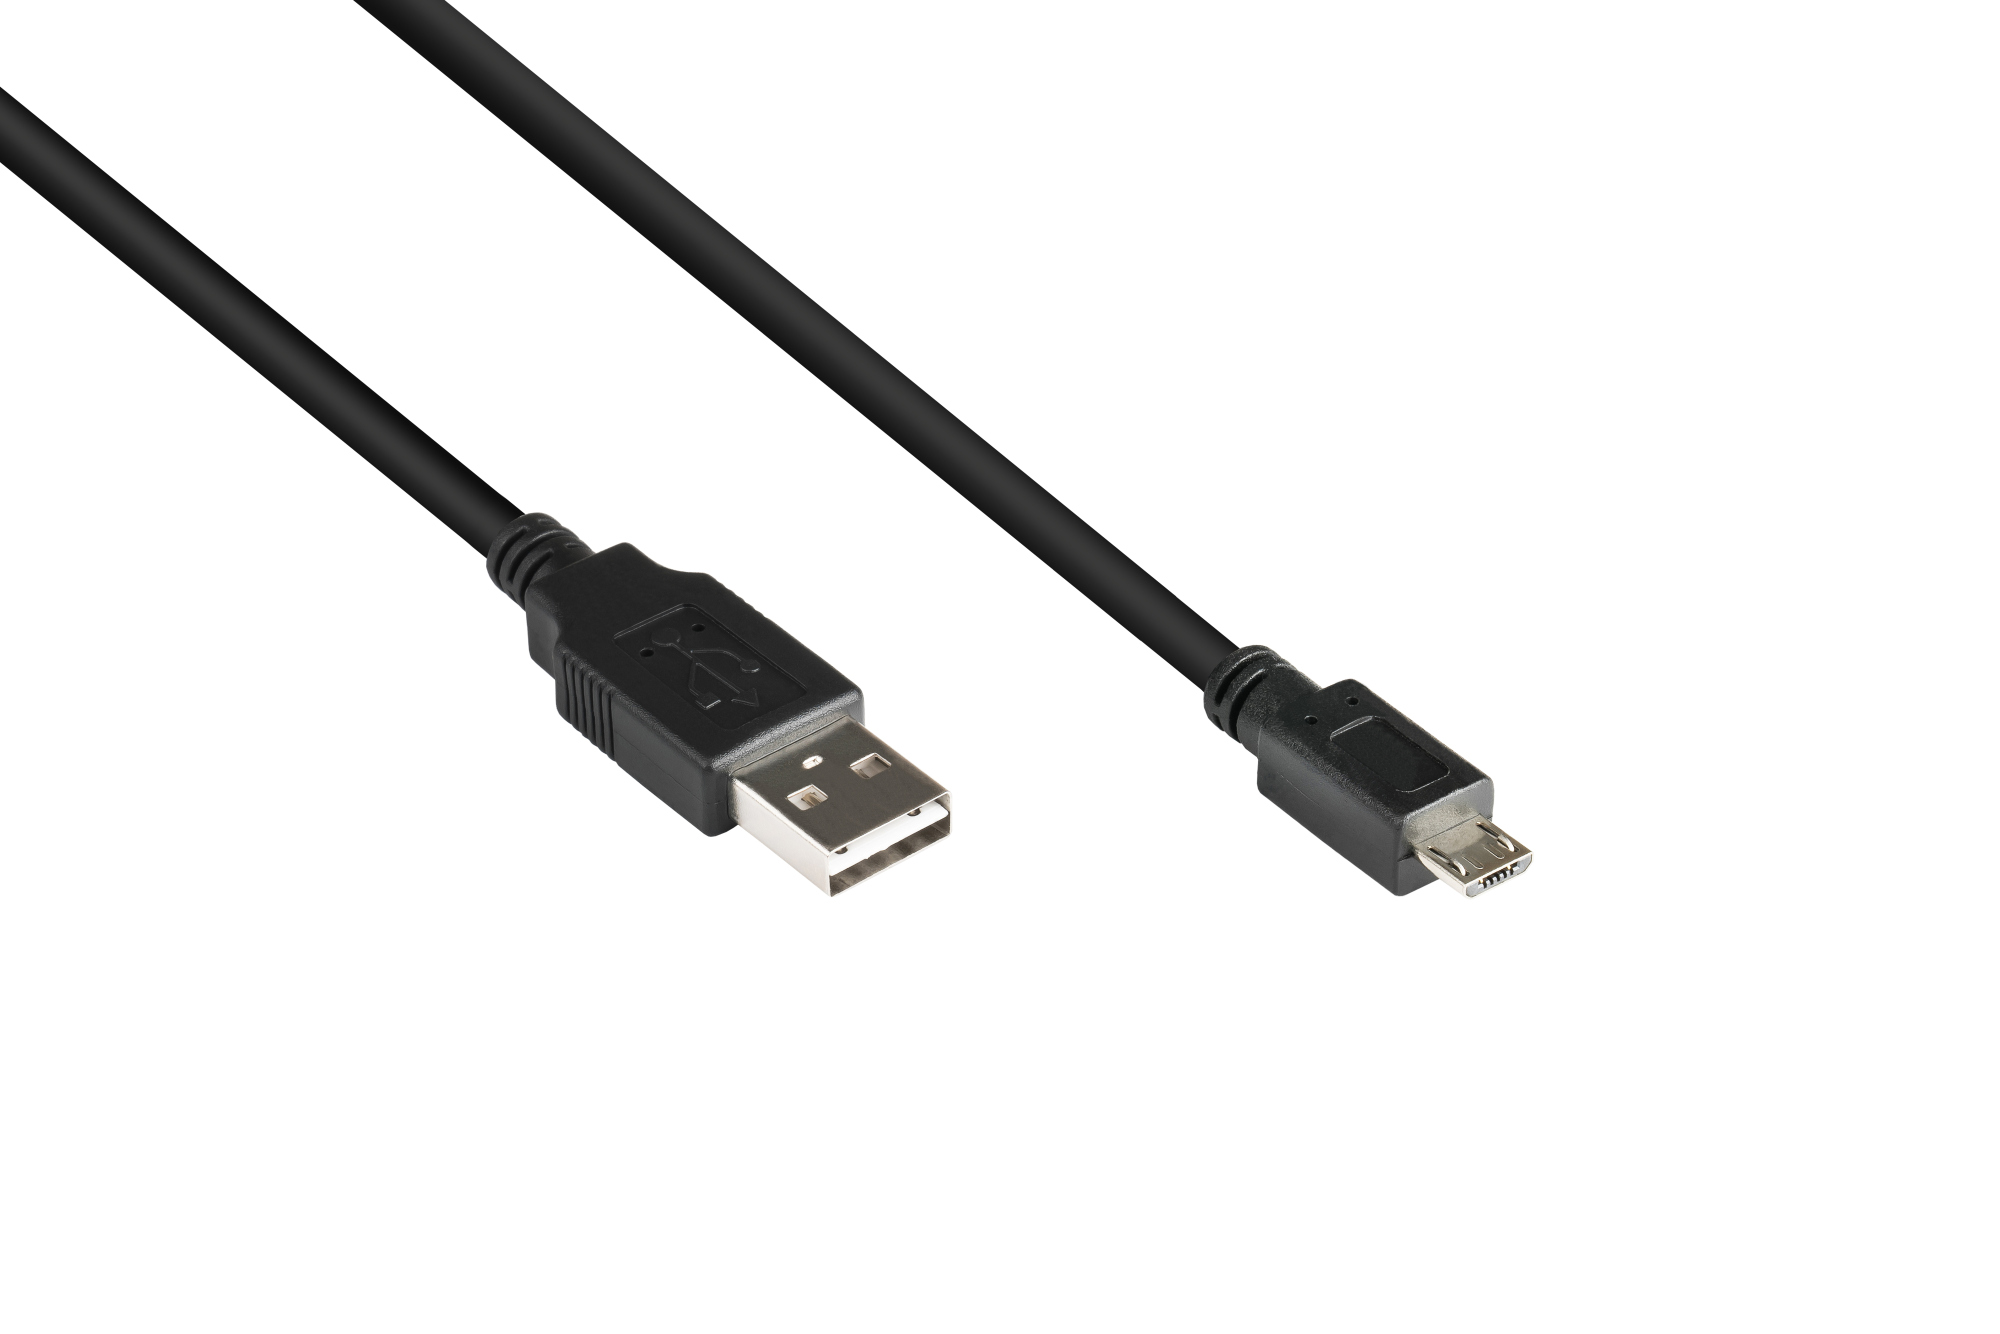 Anschlusskabel USB 2.0 EASY Stecker A an Stecker Micro B, schwarz, 1m, Good Connections®